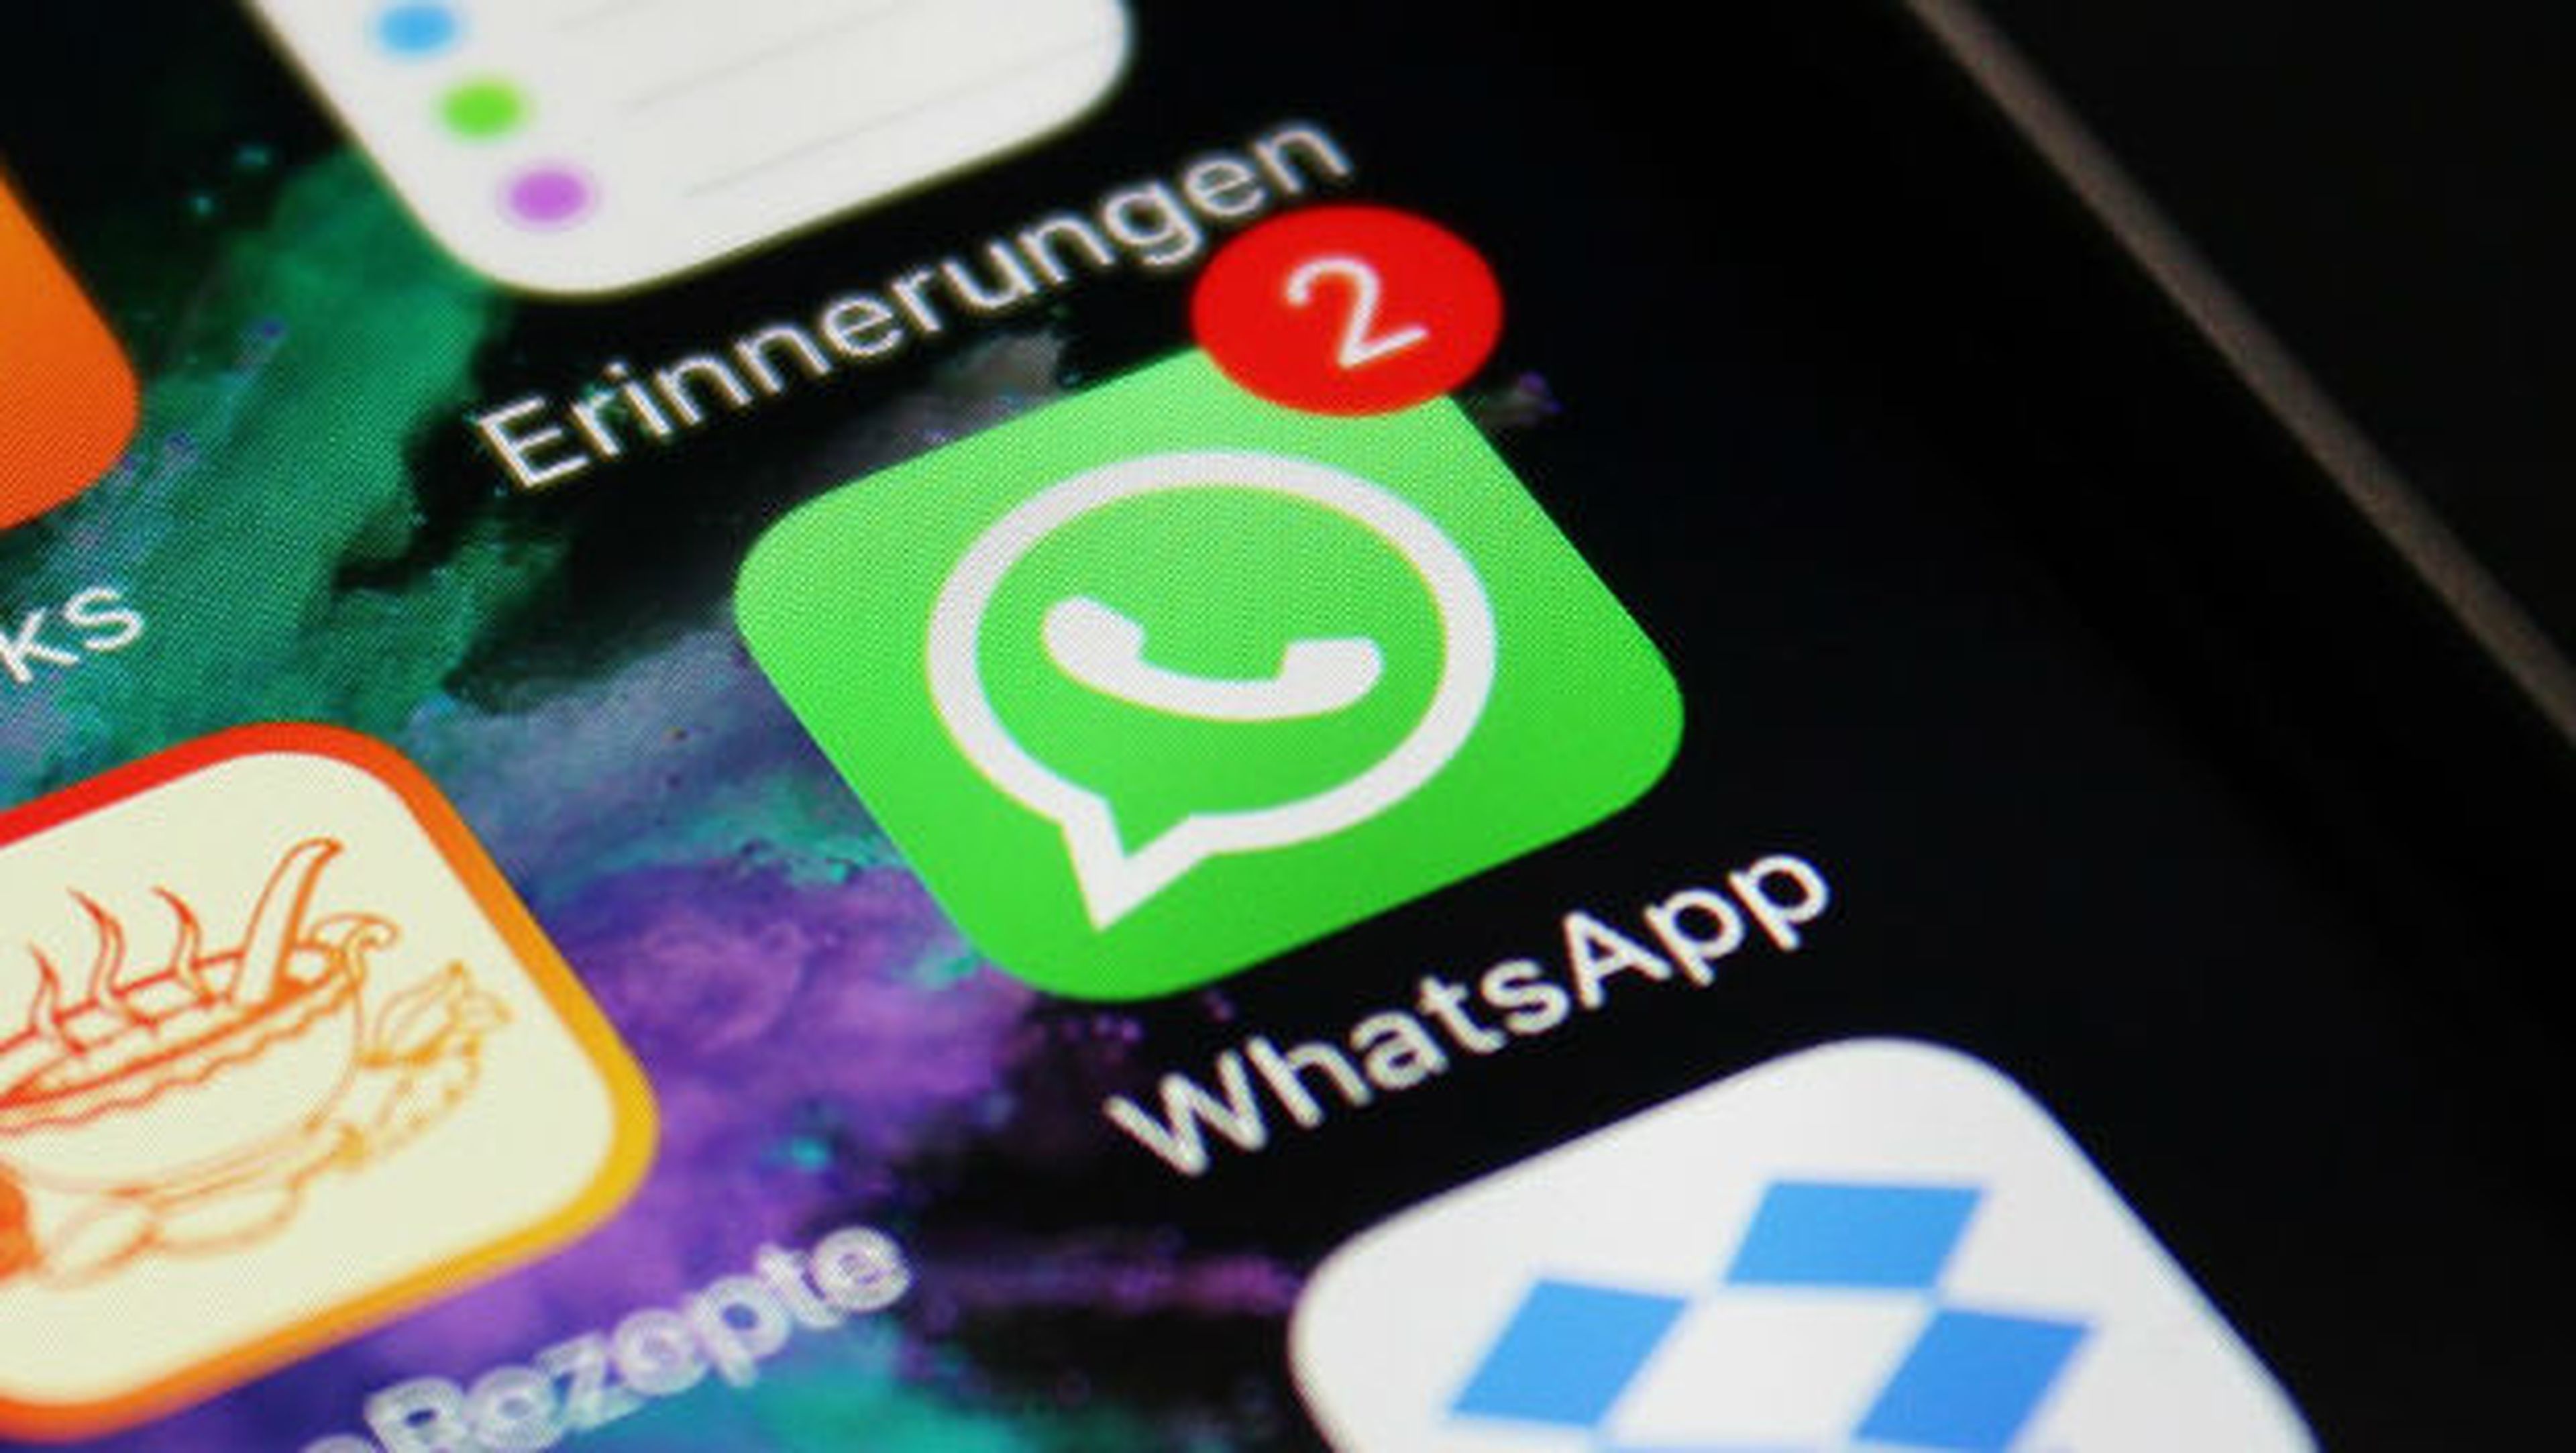 WhatsApp ya permite citar los mensajes más rápido.